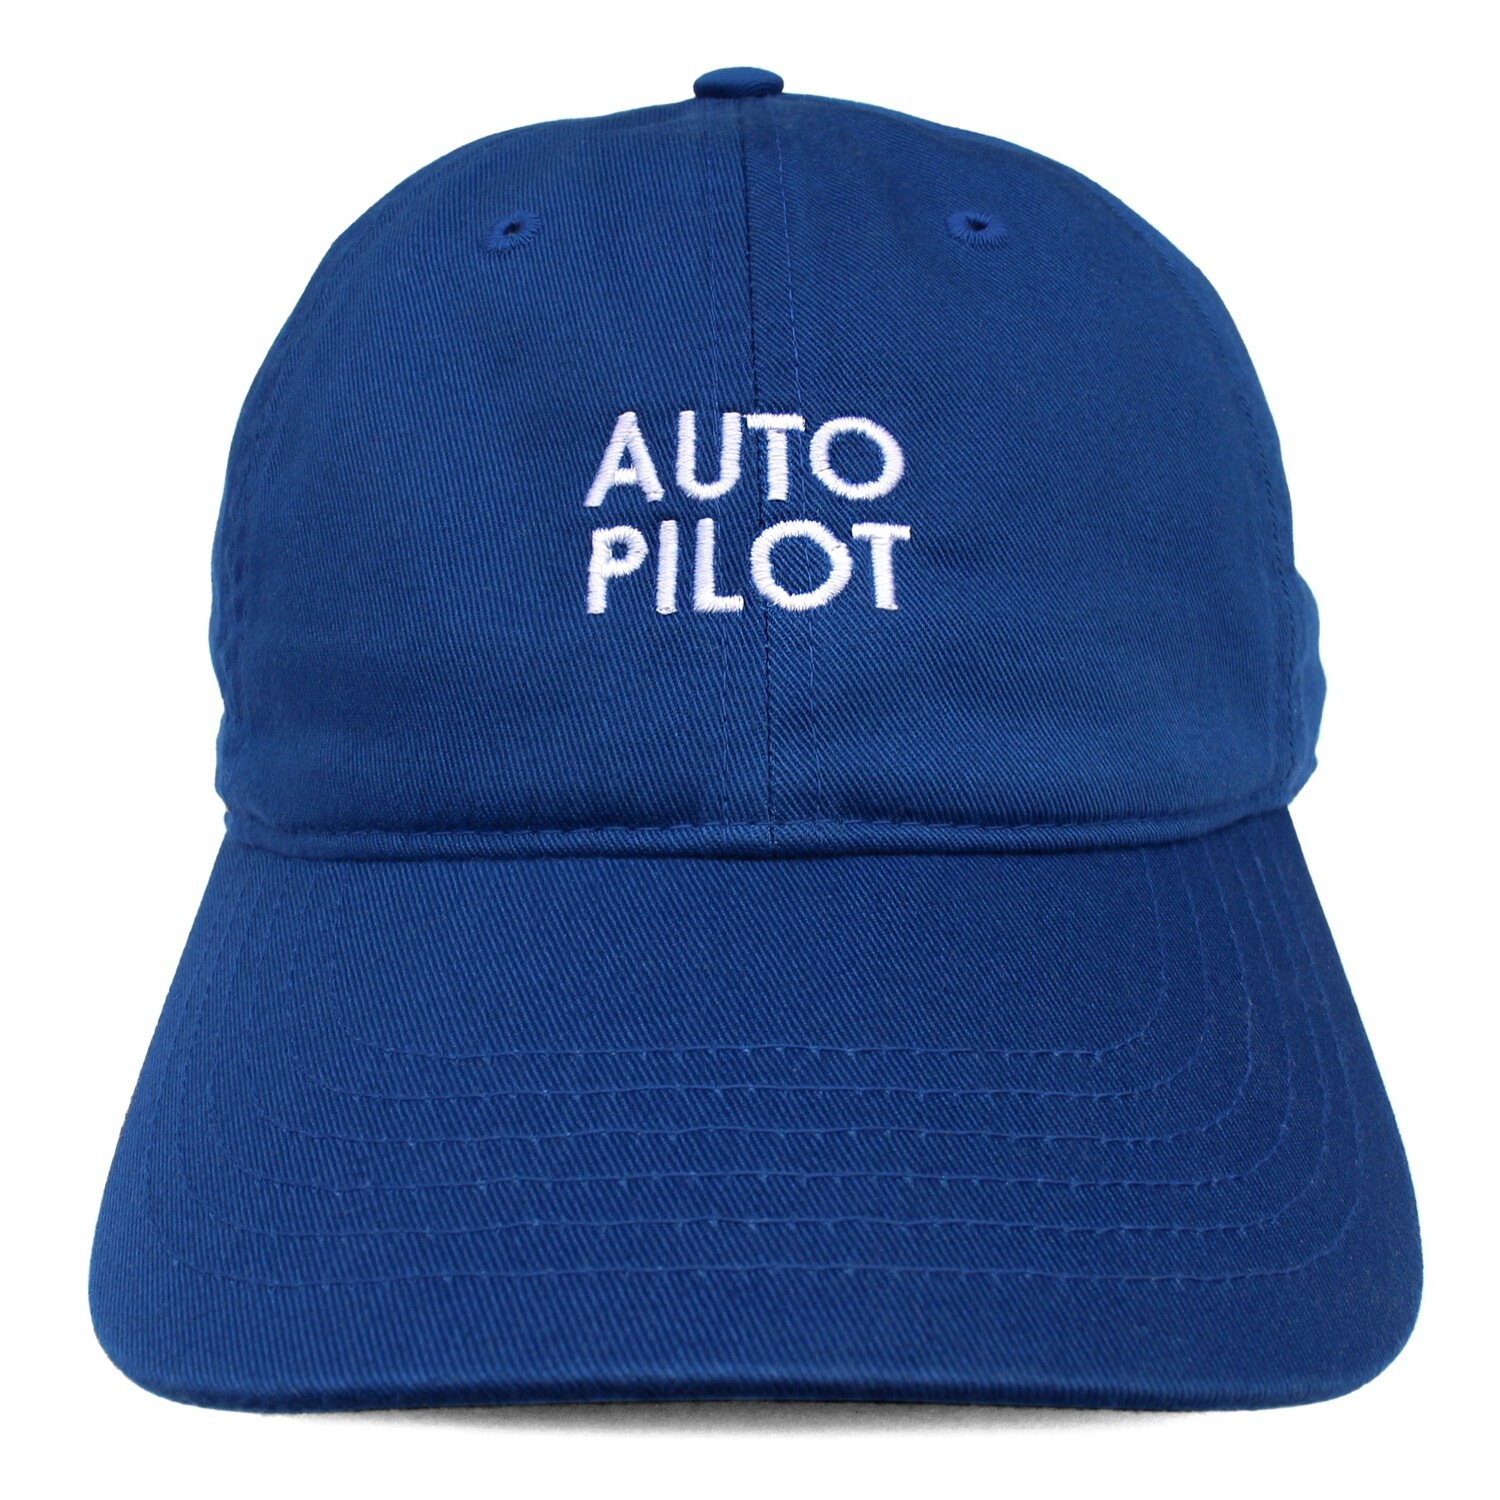 AUTO PILOT HAT